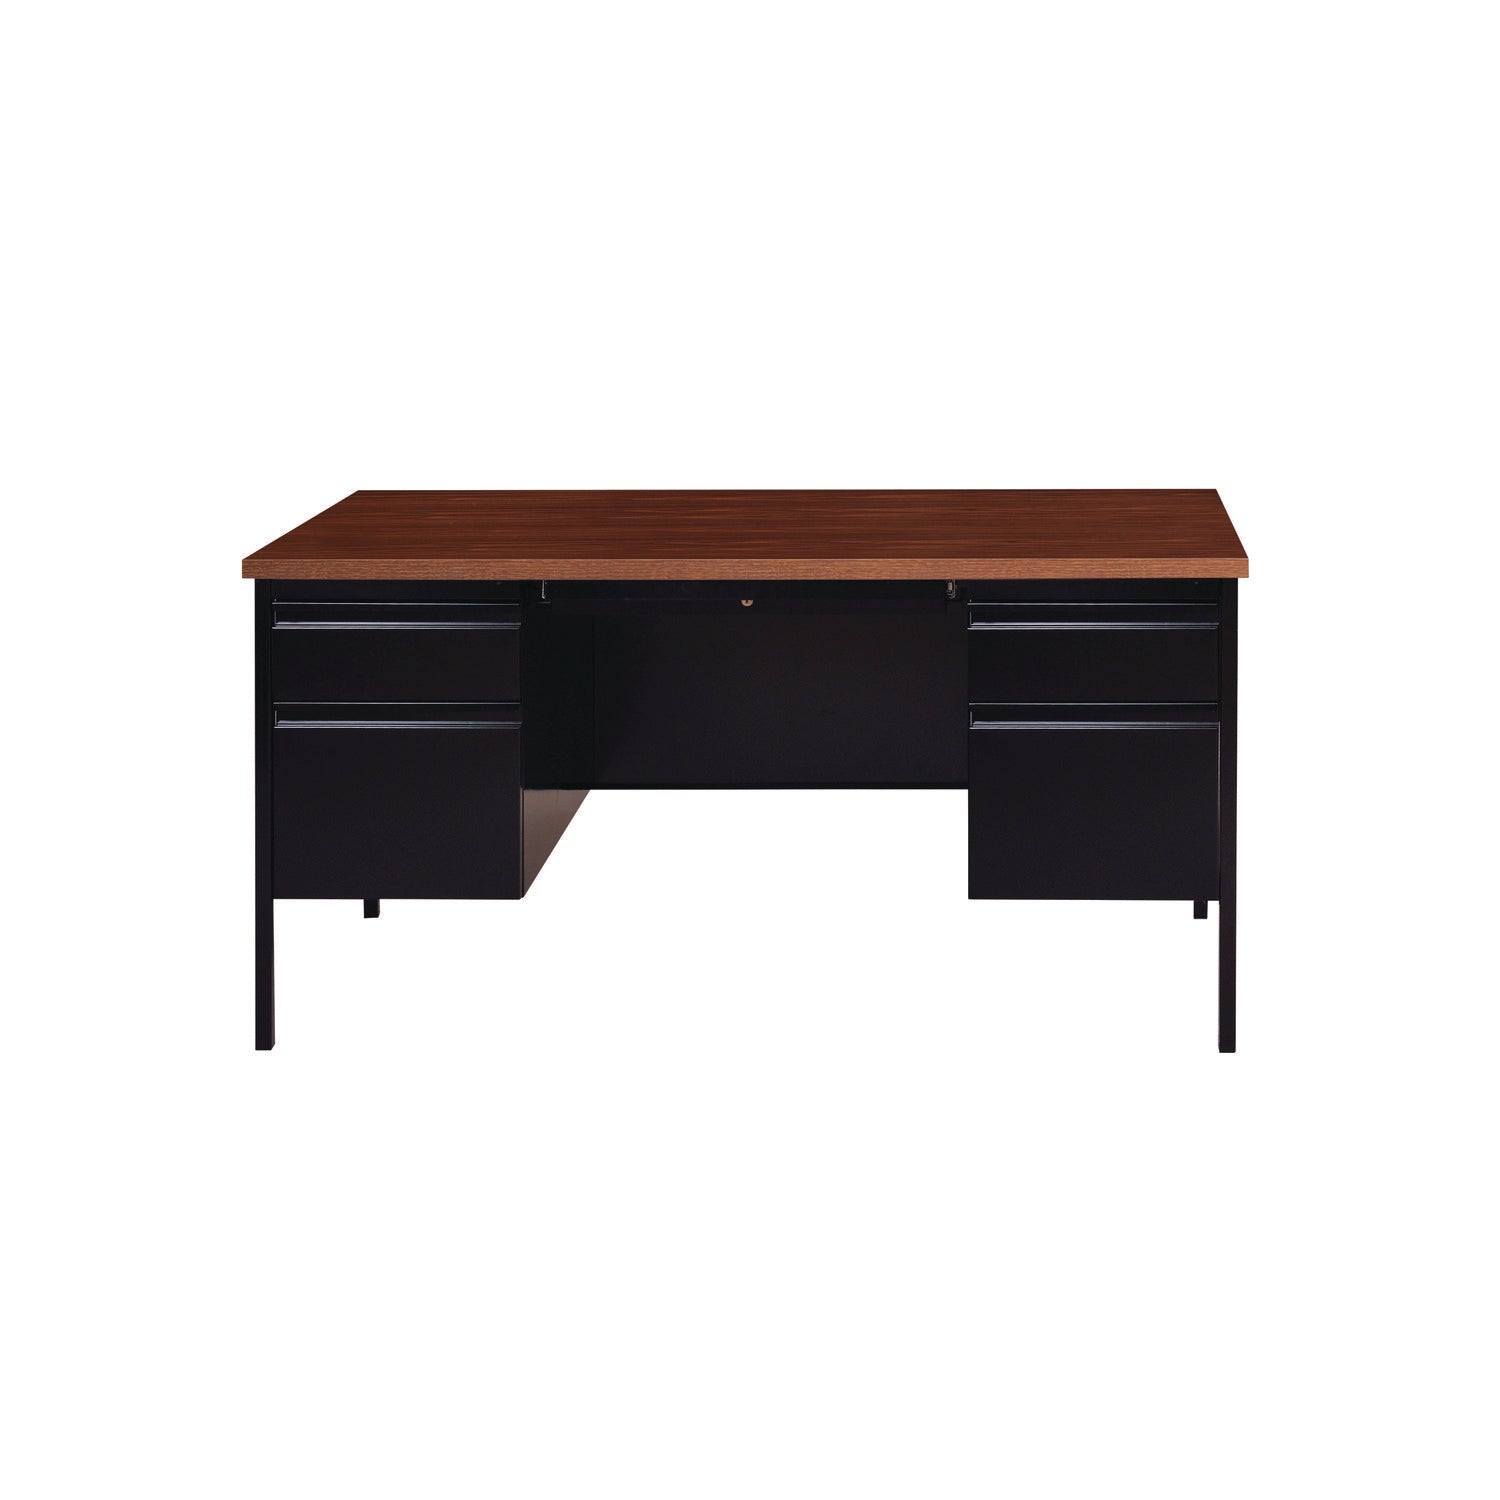 double-pedestal-steel-desk-60-x-30-x-295-mocha-black-black-legs_alehsd6030bm - 1